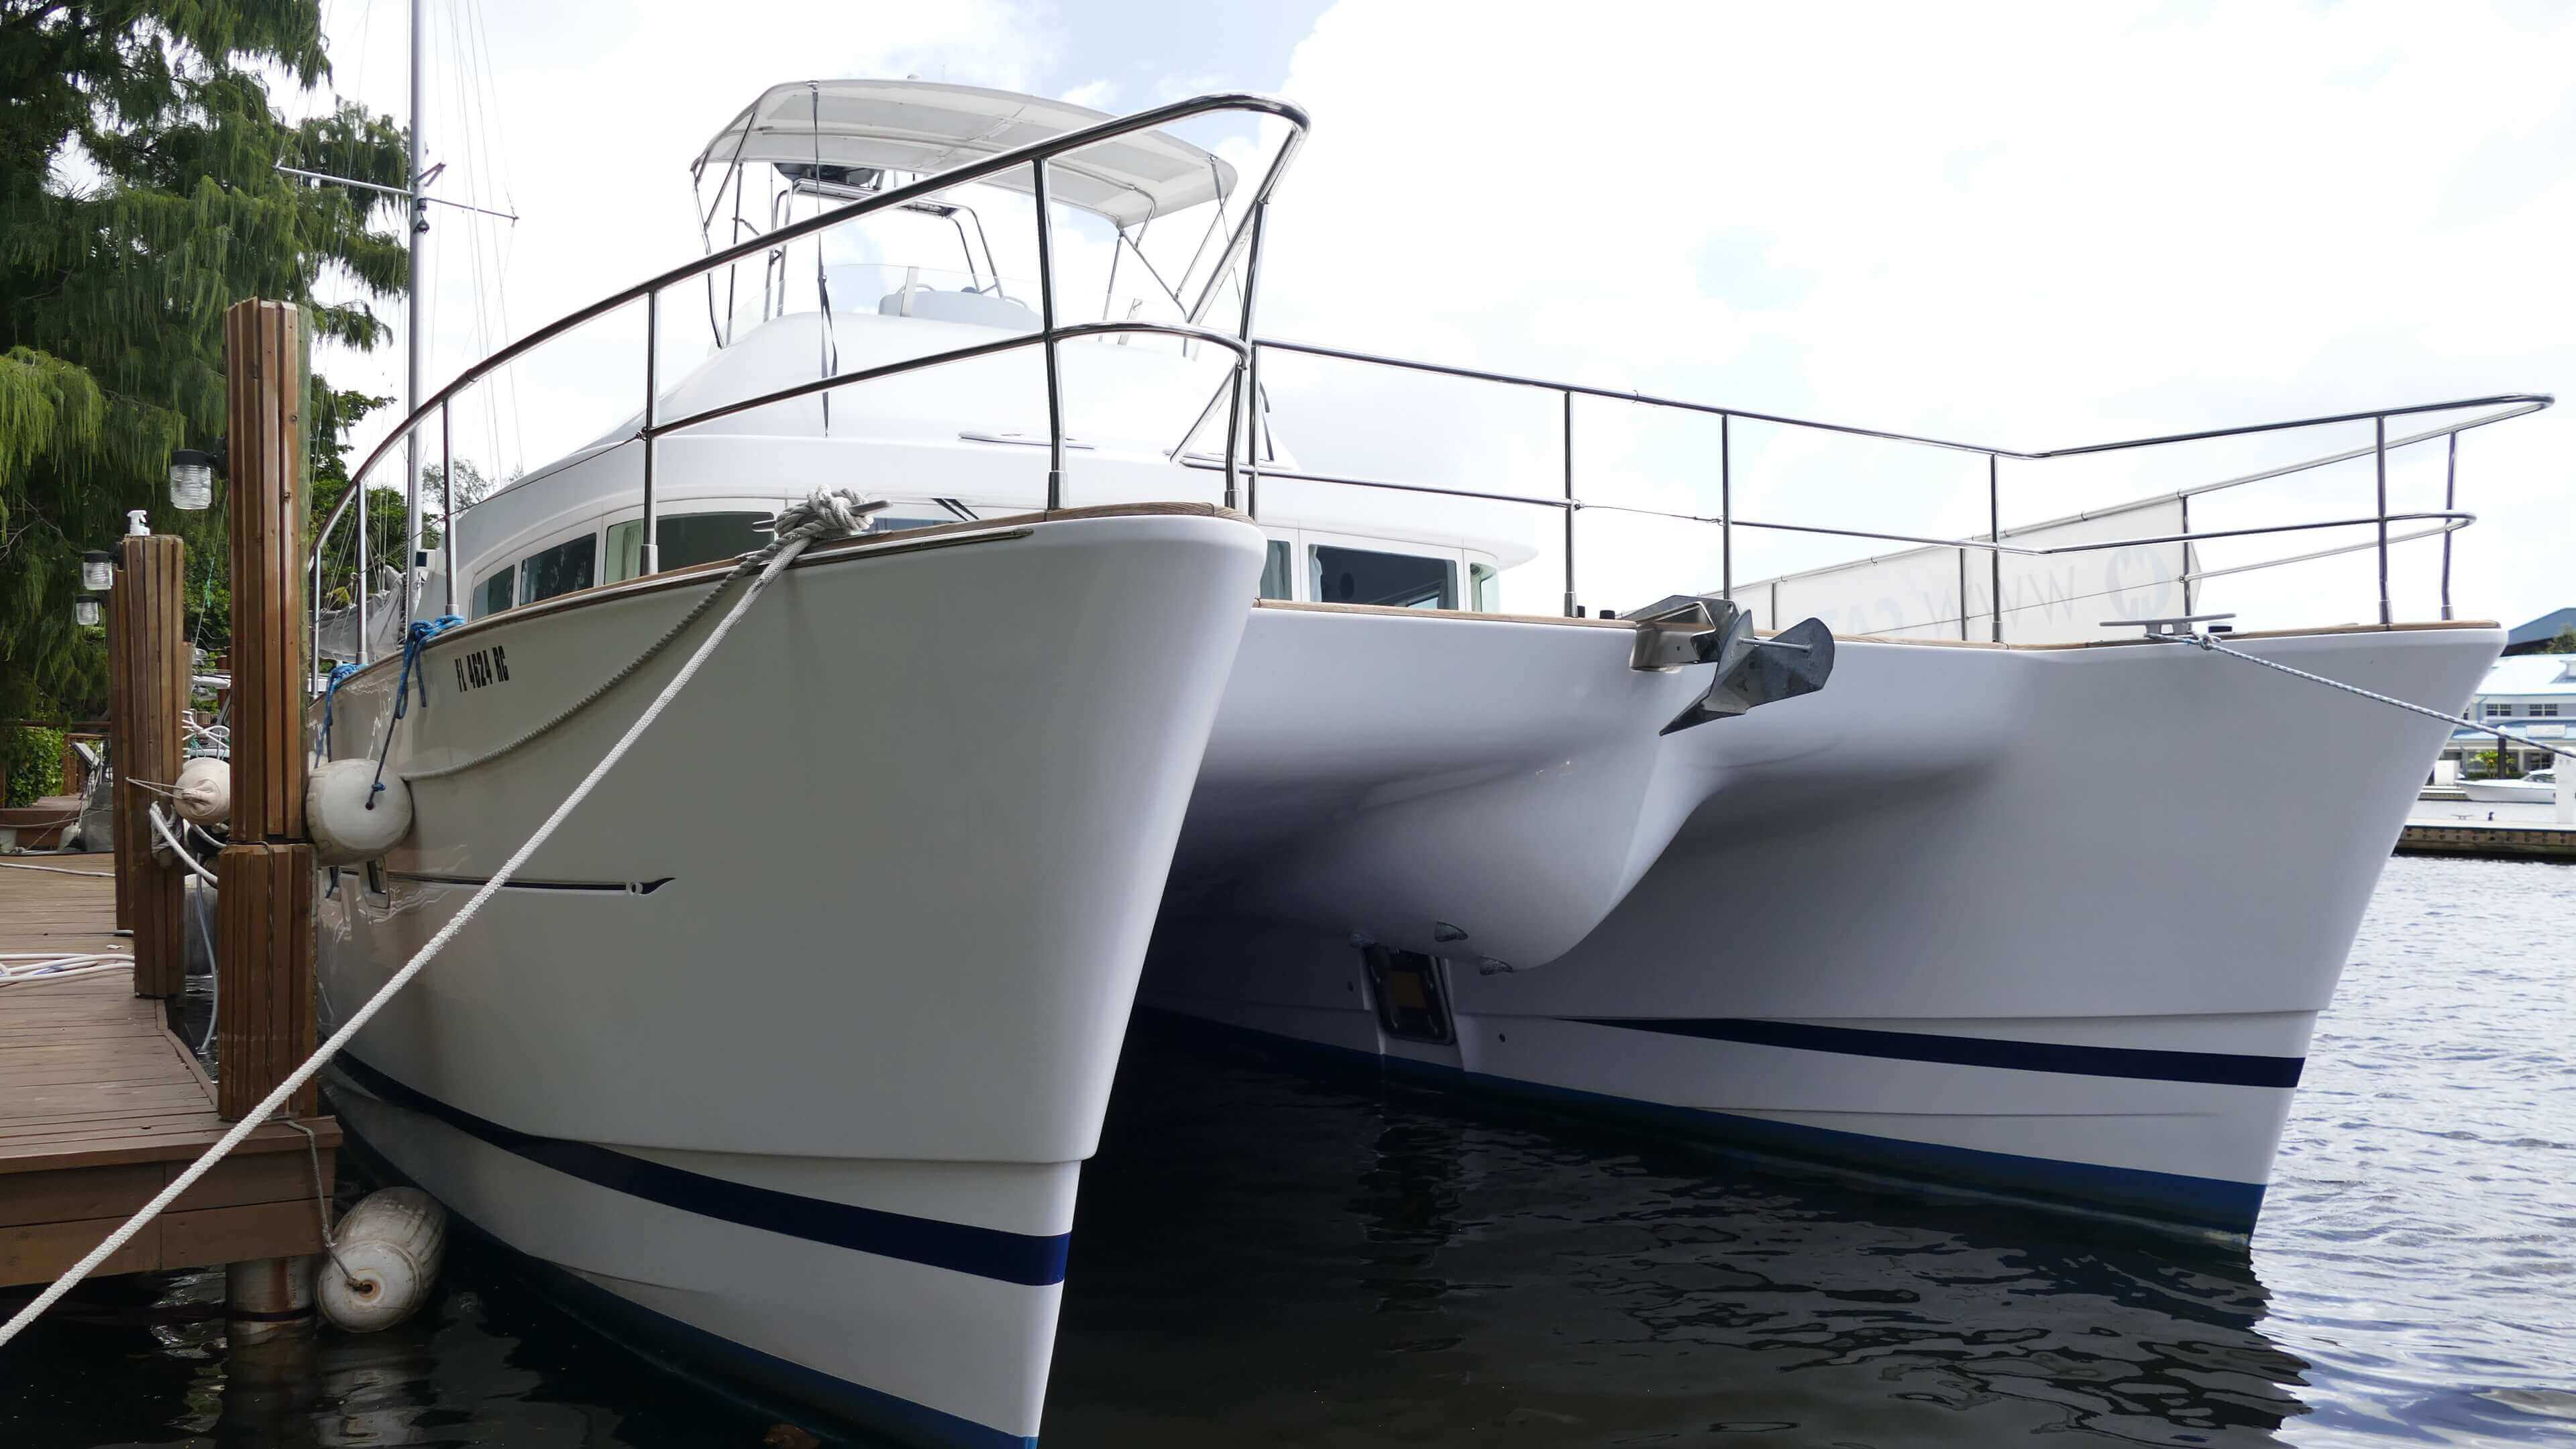 43 ft catamaran for sale